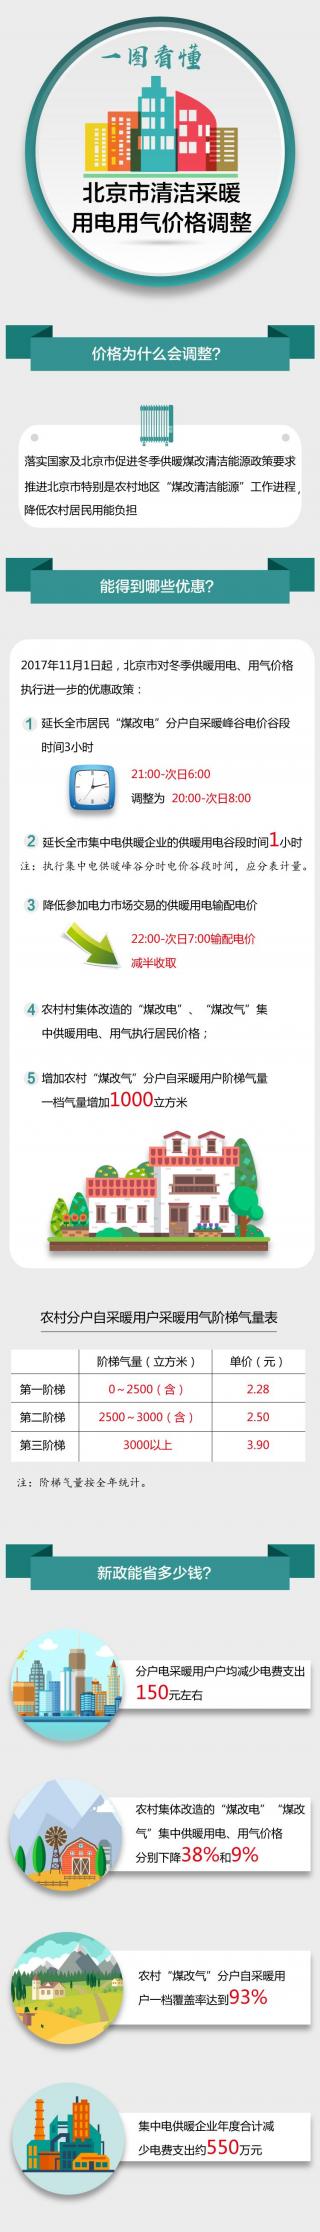 一图看懂北京市清洁采暖用电用气价格调整